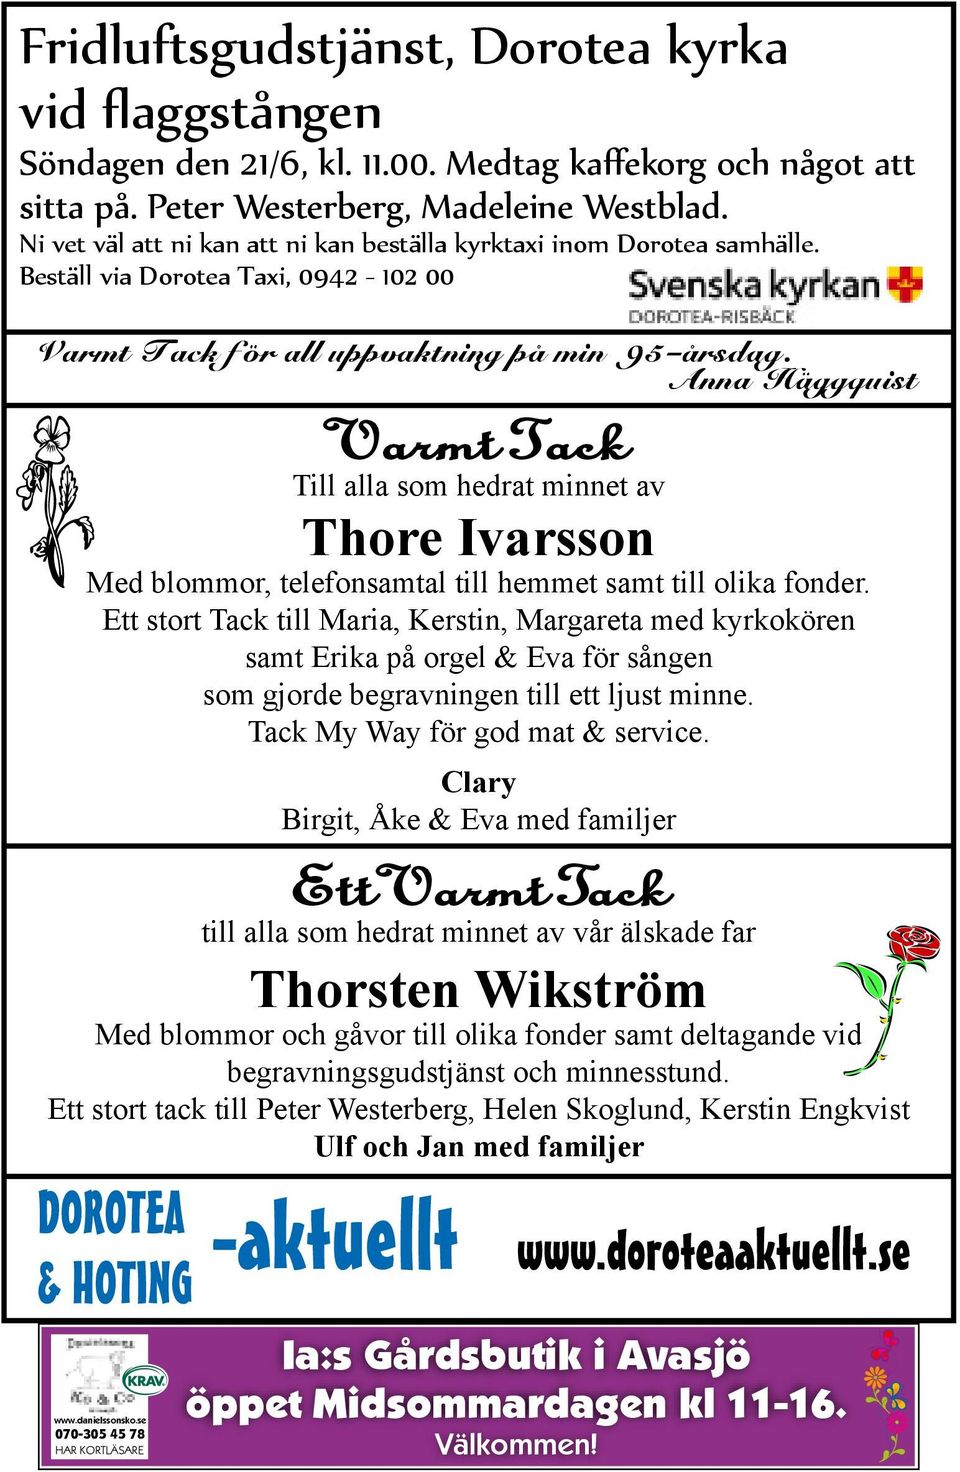 Anna Häggquist Varmt Tack Till alla som hedrat minnet av Thore Ivarsson Med blommor, telefonsamtal till hemmet samt till olika fonder.